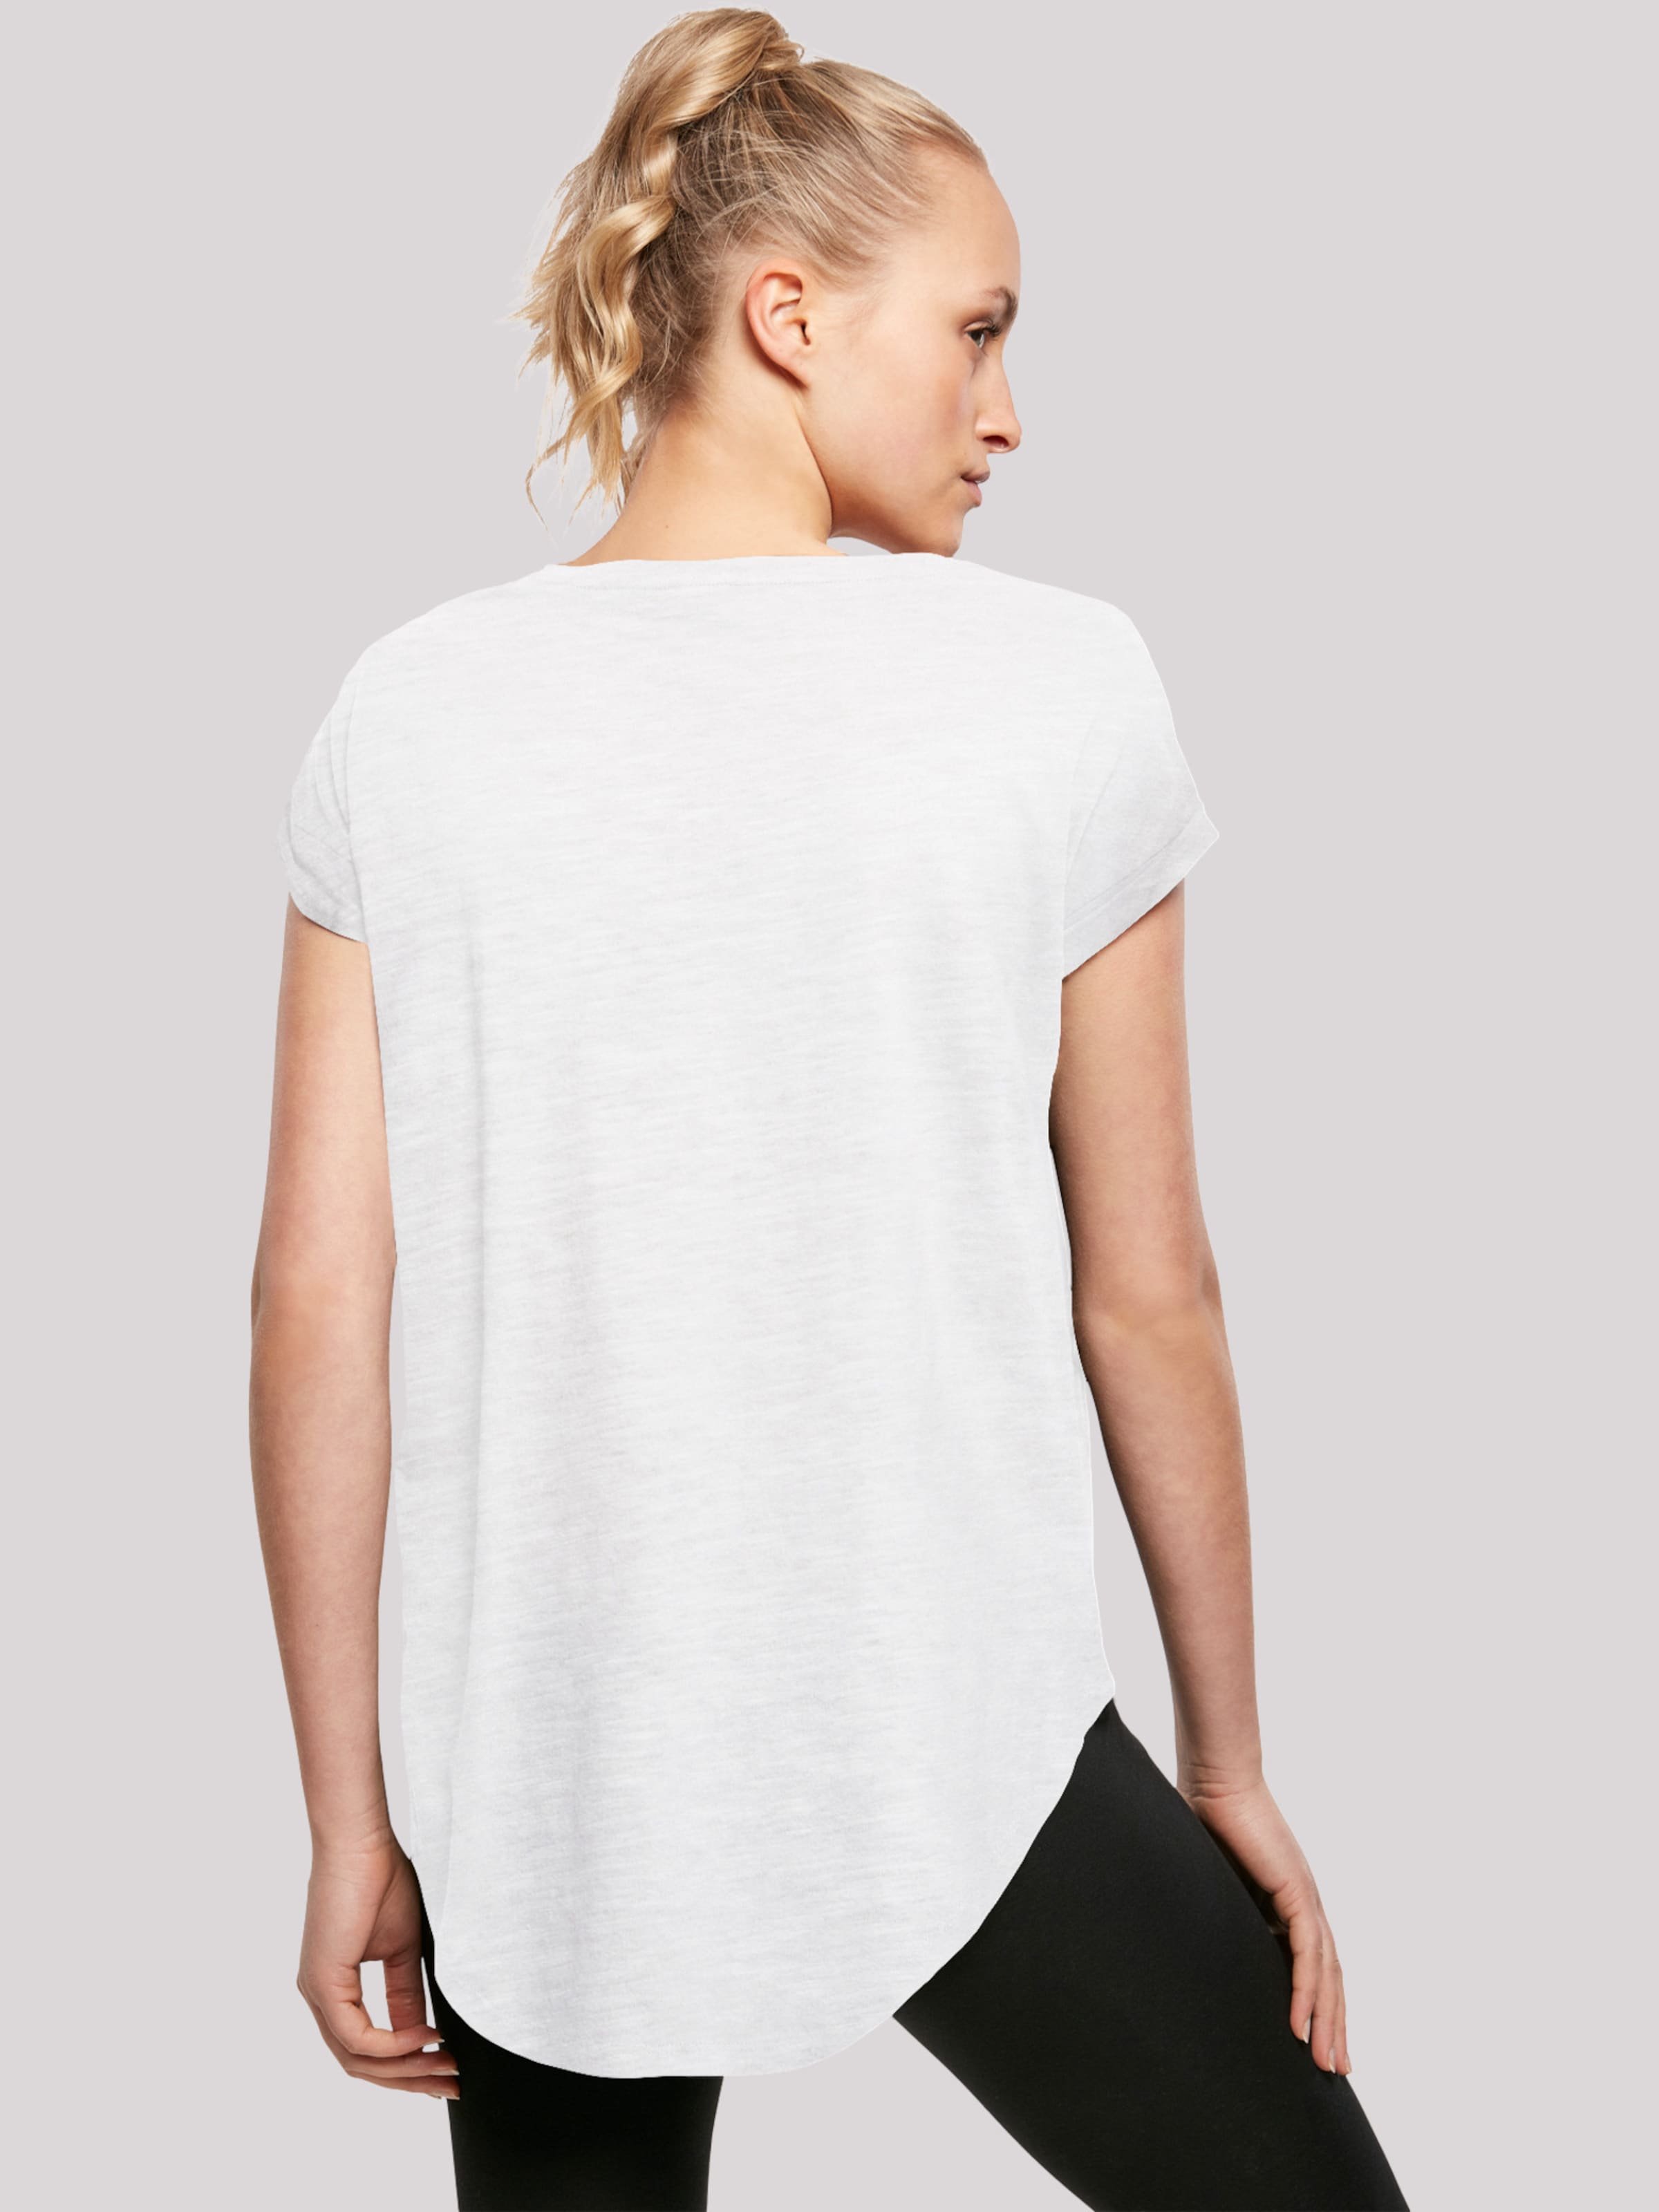 Frauen Shirts & Tops F4NT4STIC T-Shirt in Weiß - LS30760